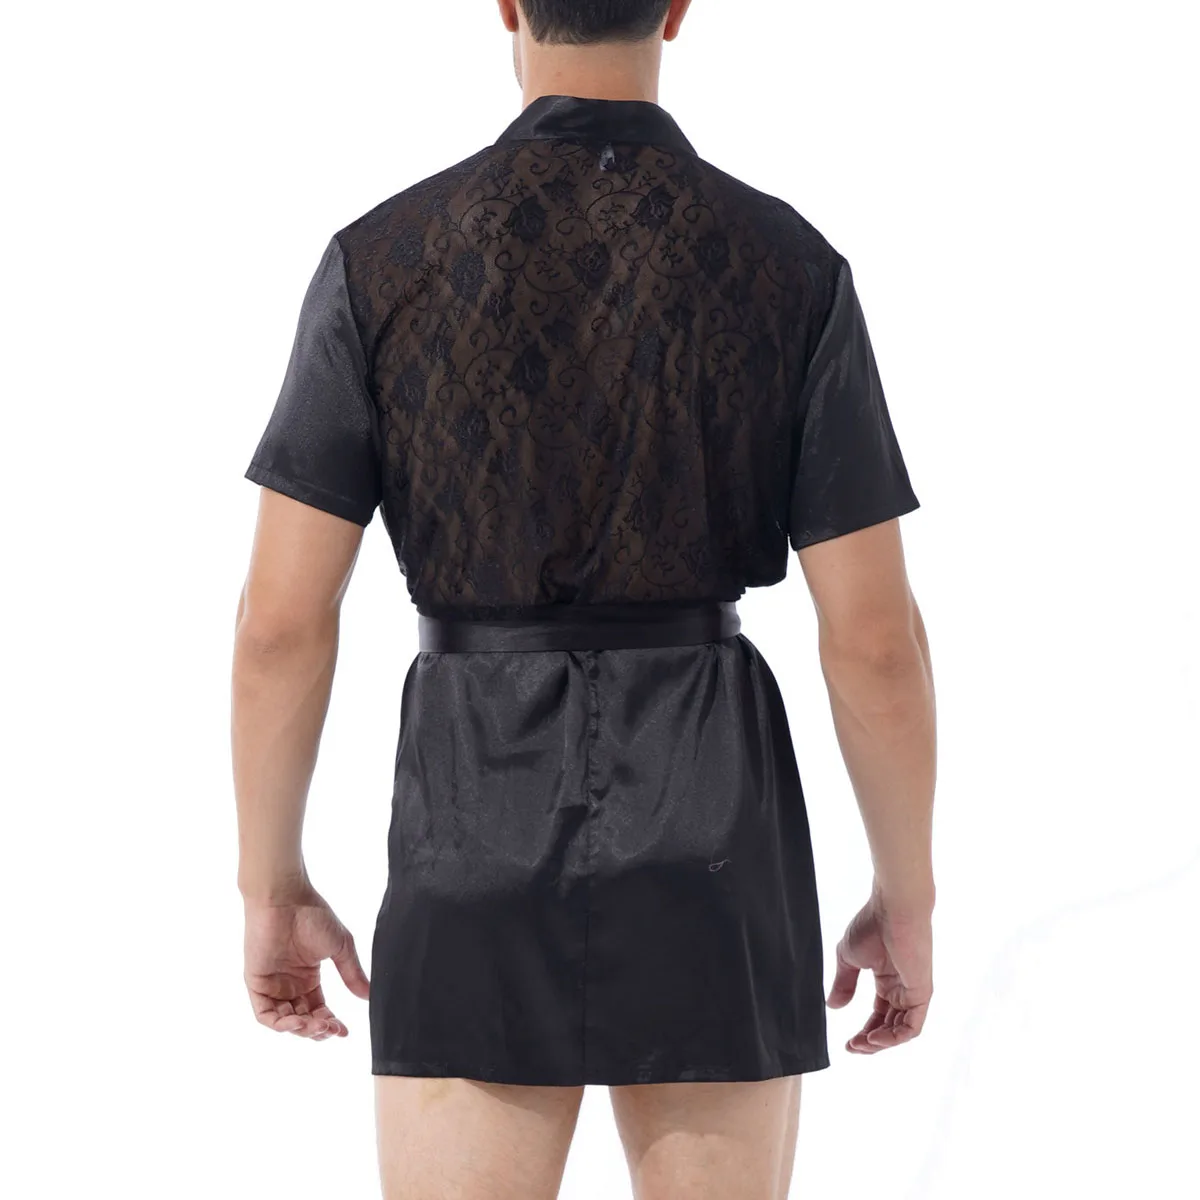 Халат-кимоно мужской черный атласный шелковый халат легкая одежда для отдыха